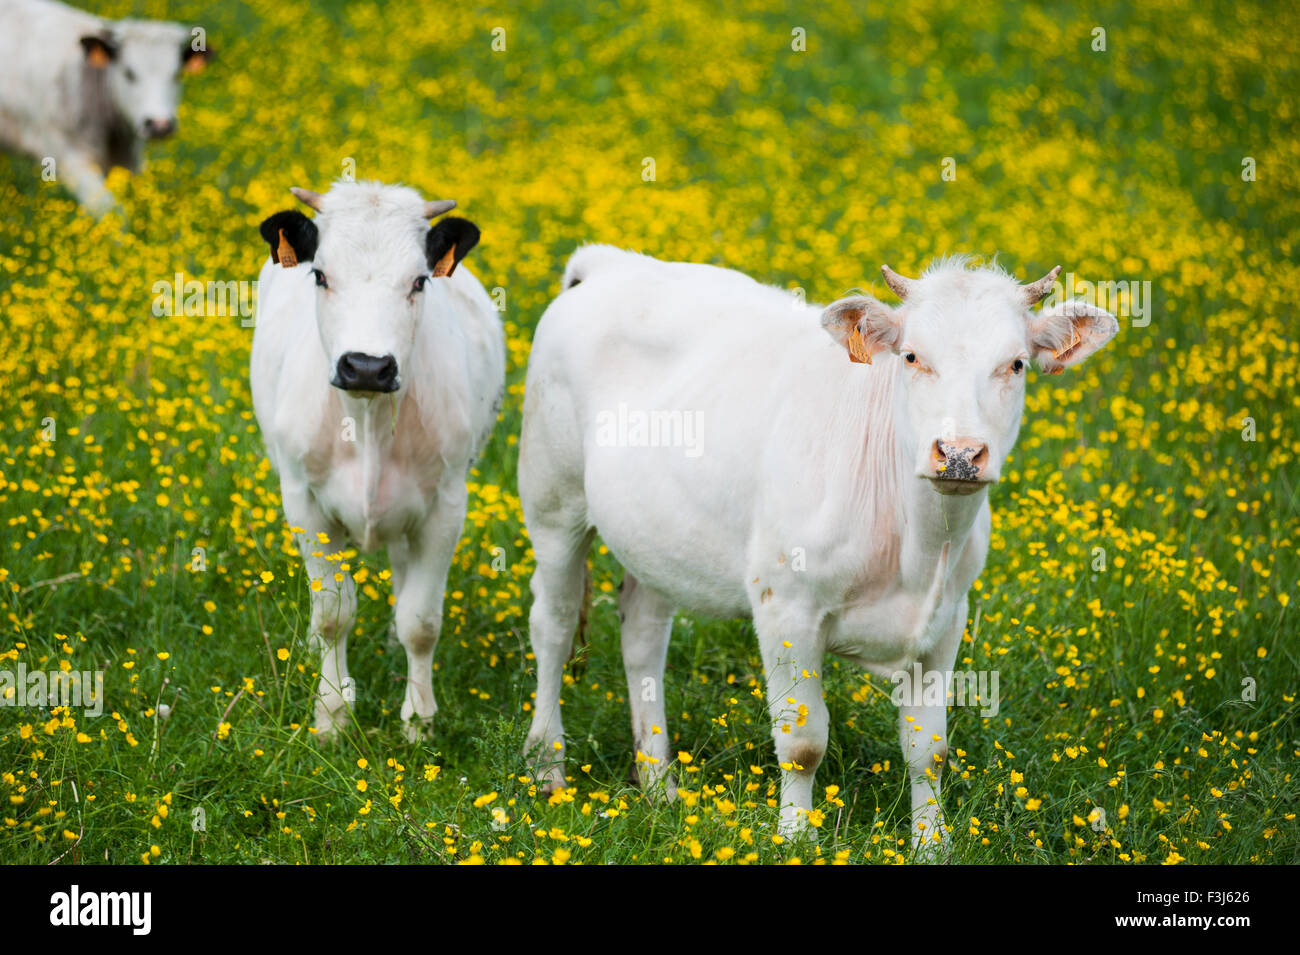 Veal calves in meadow full of ranunculus flowers Stock Photo